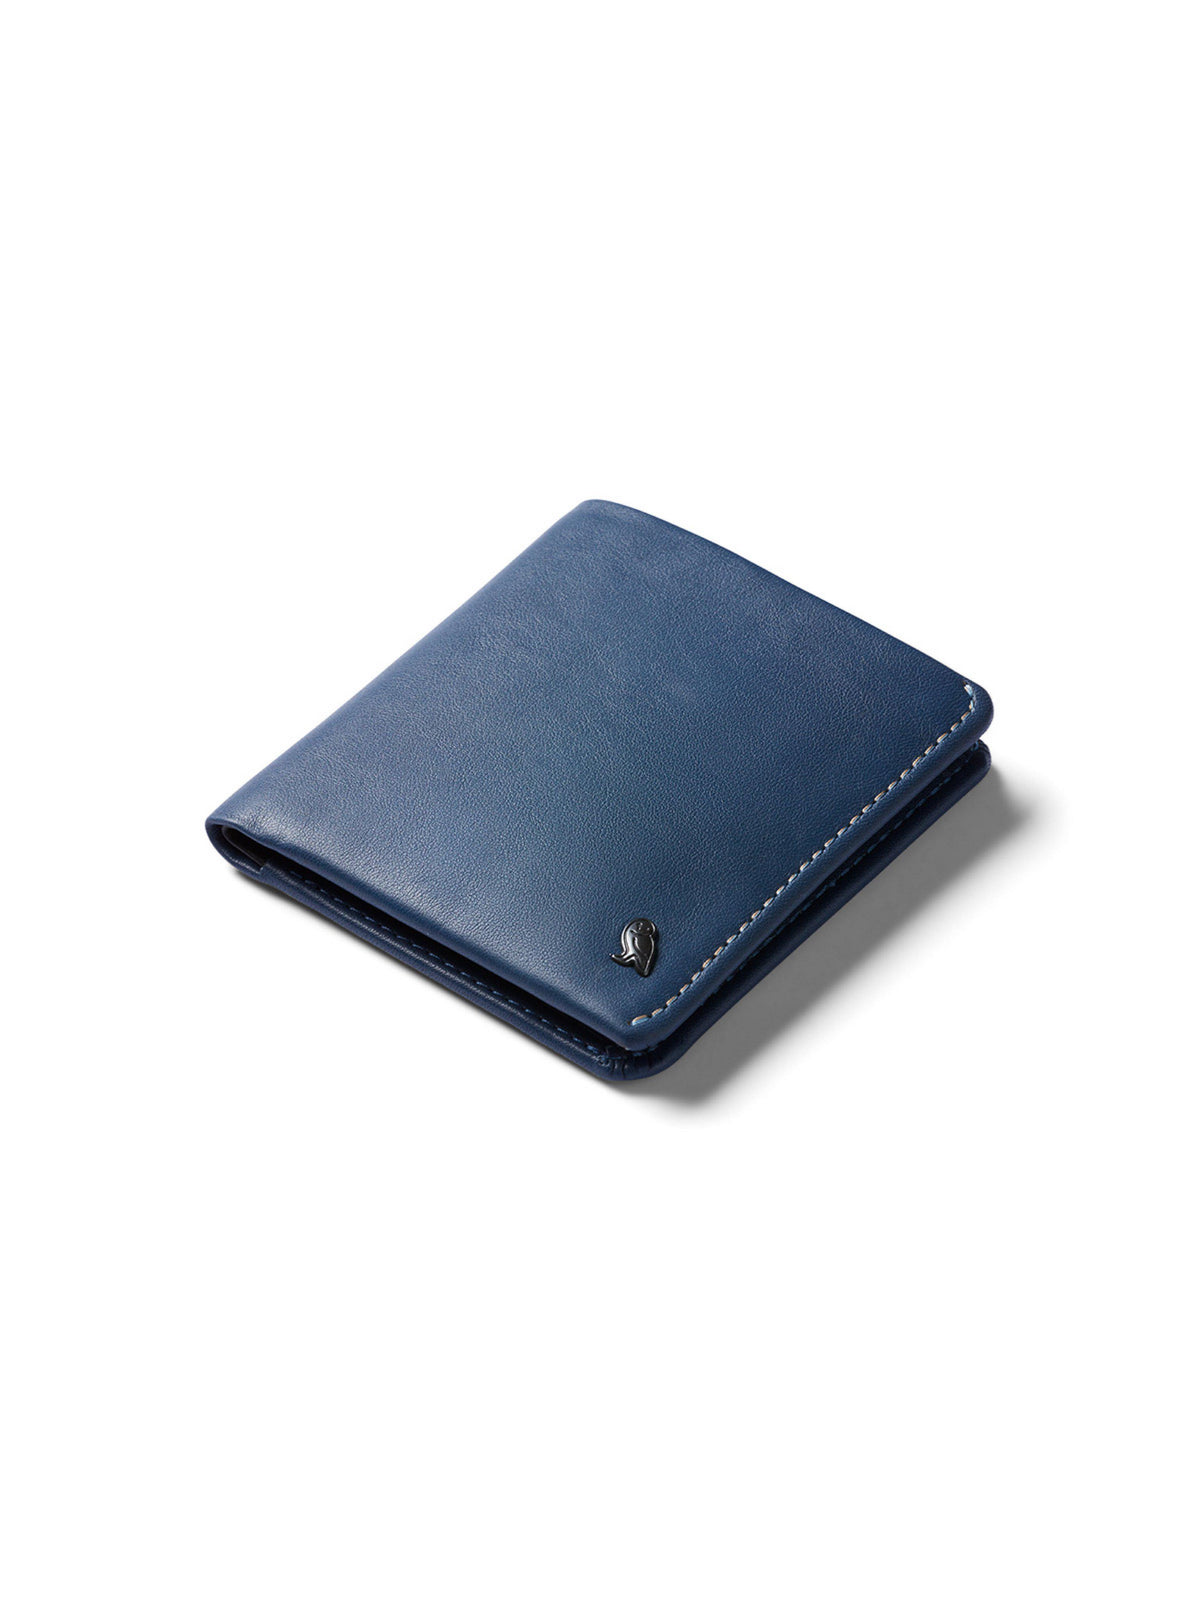 Bellroy Coin Wallet Marine Blue RFID